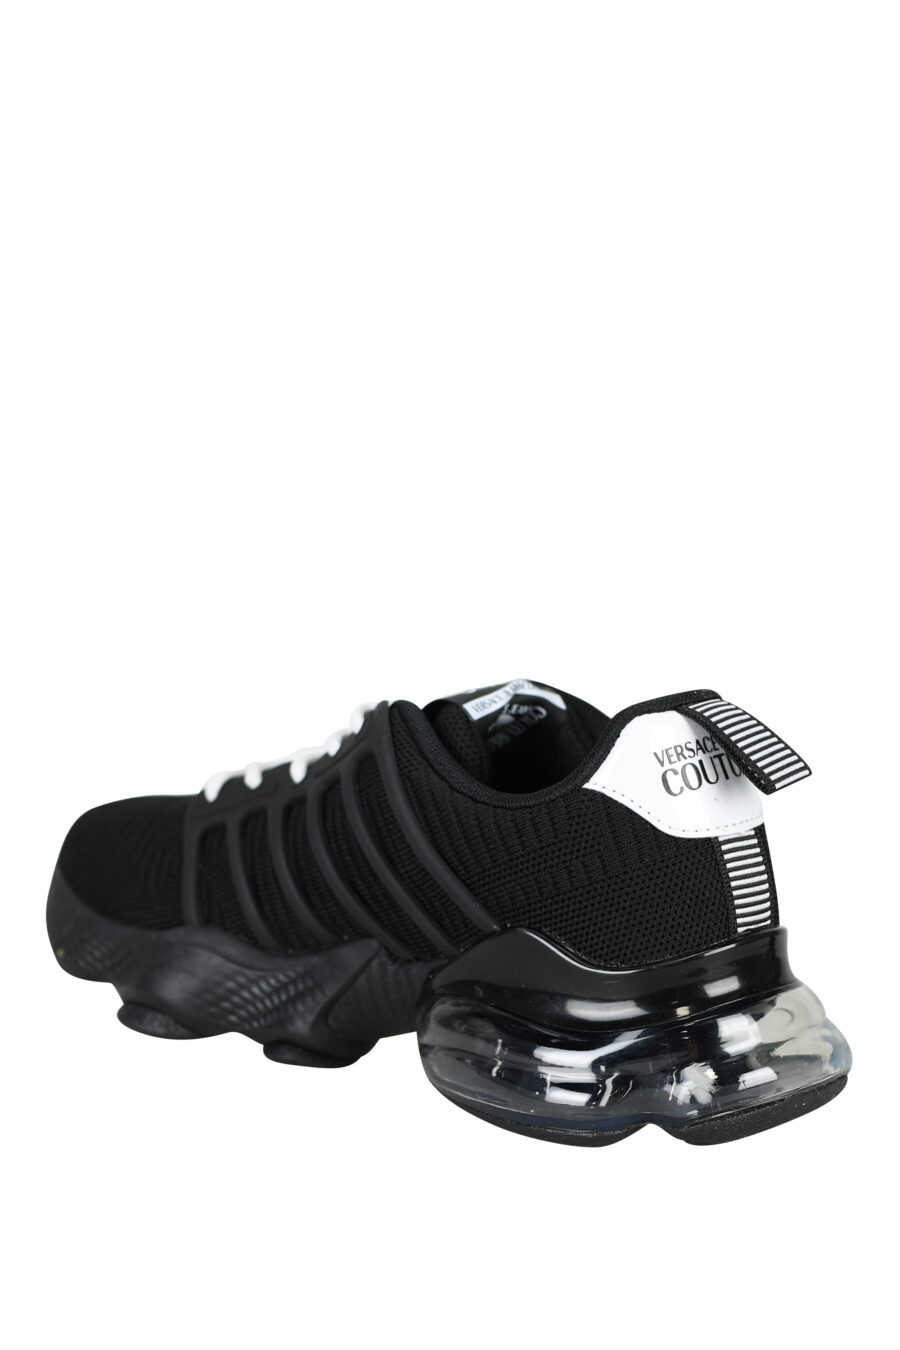 Zapatillas negras con maxilogo vertical y cordones cruzados - 8052019484915 3